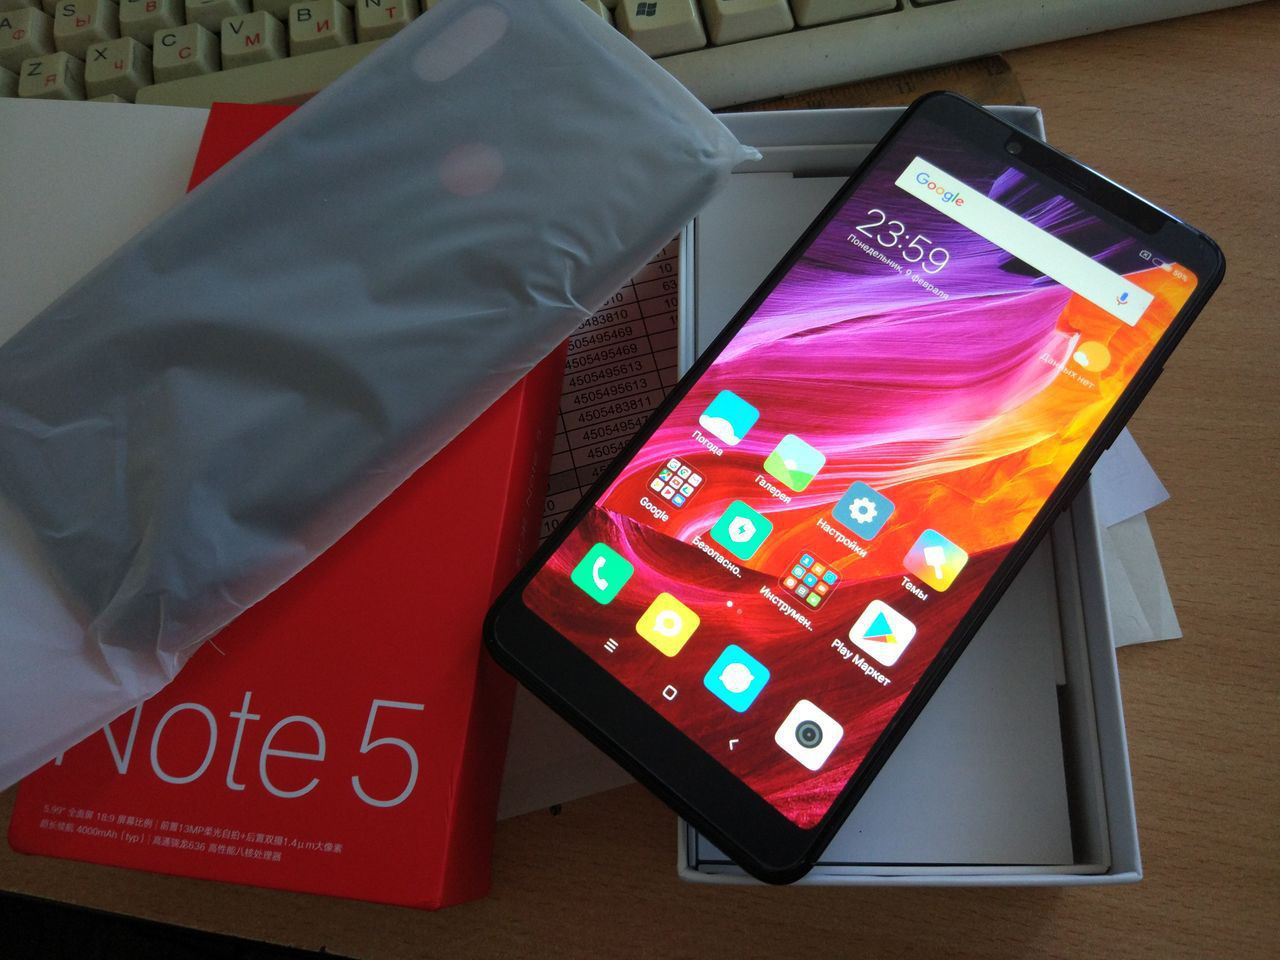 Mde6s Xiaomi Note 5a